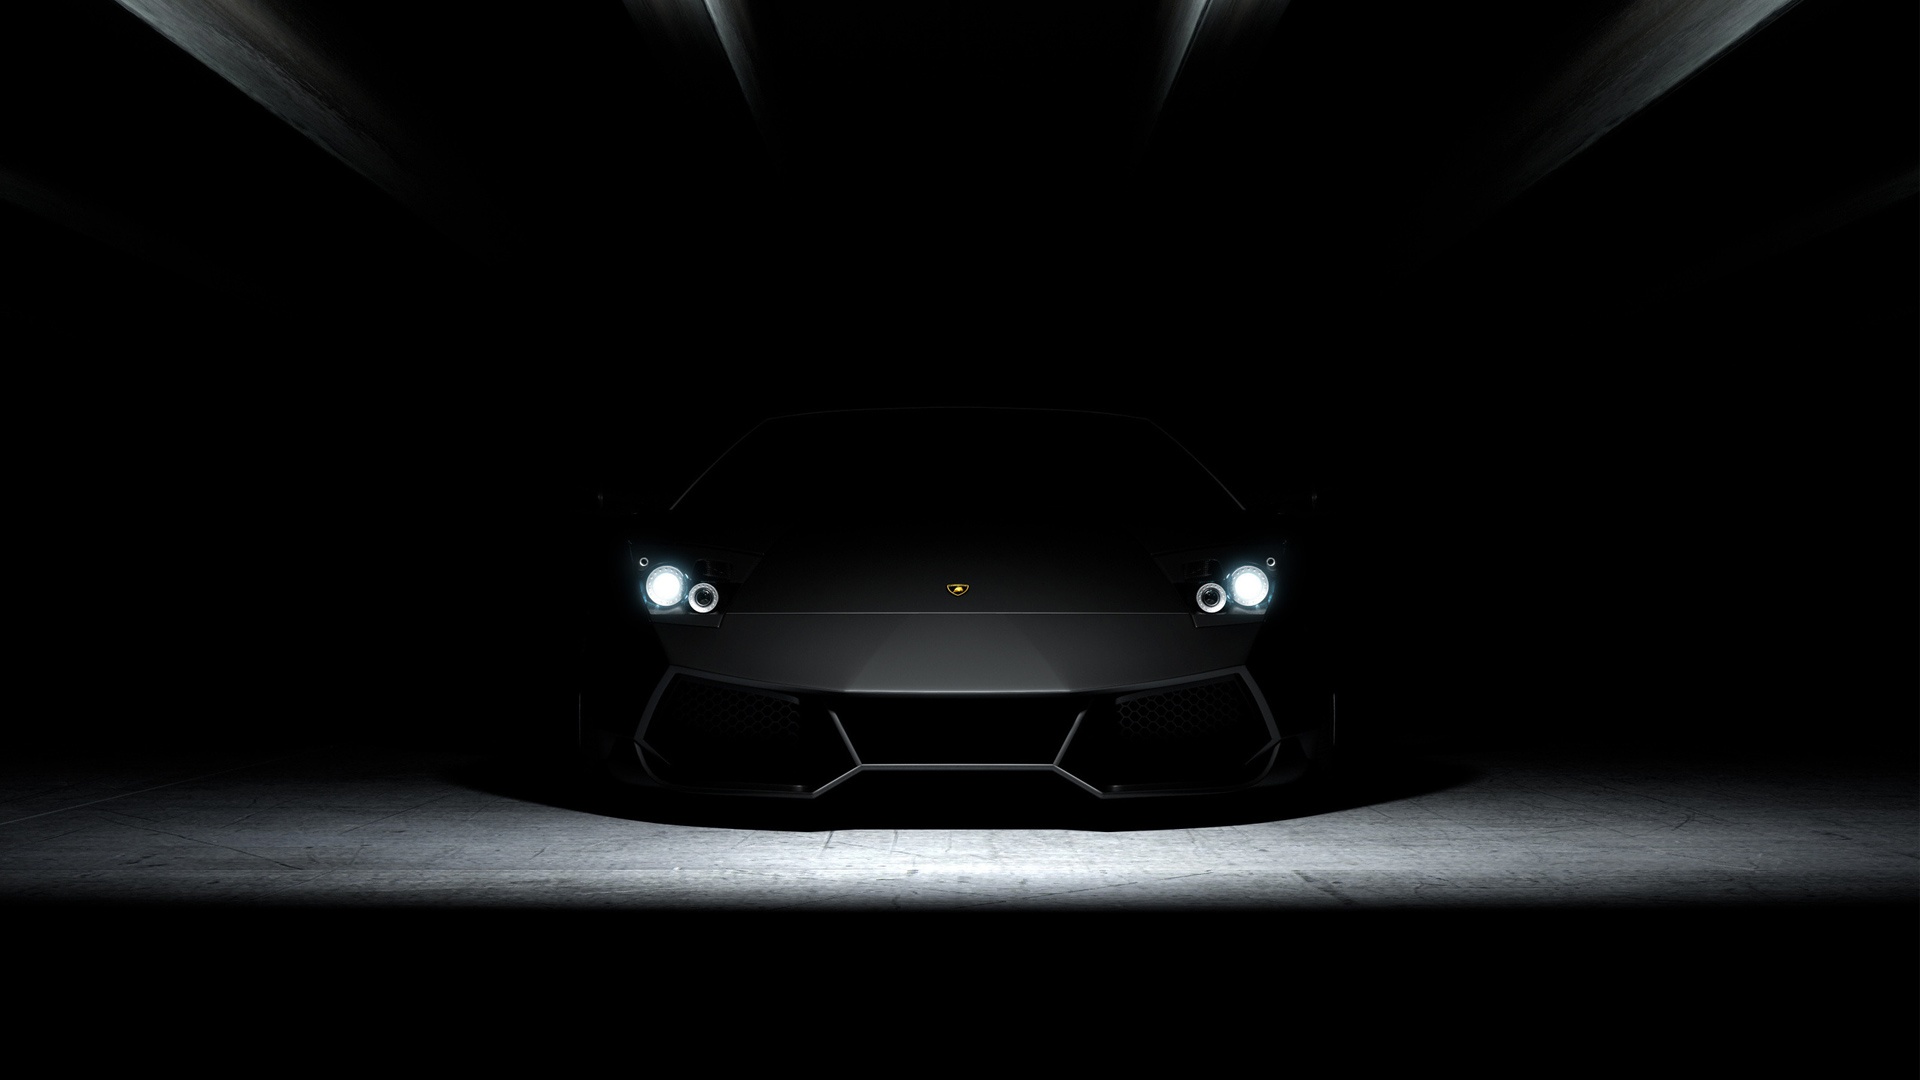 Hd Lamborghini Car Wallpapers 1080p